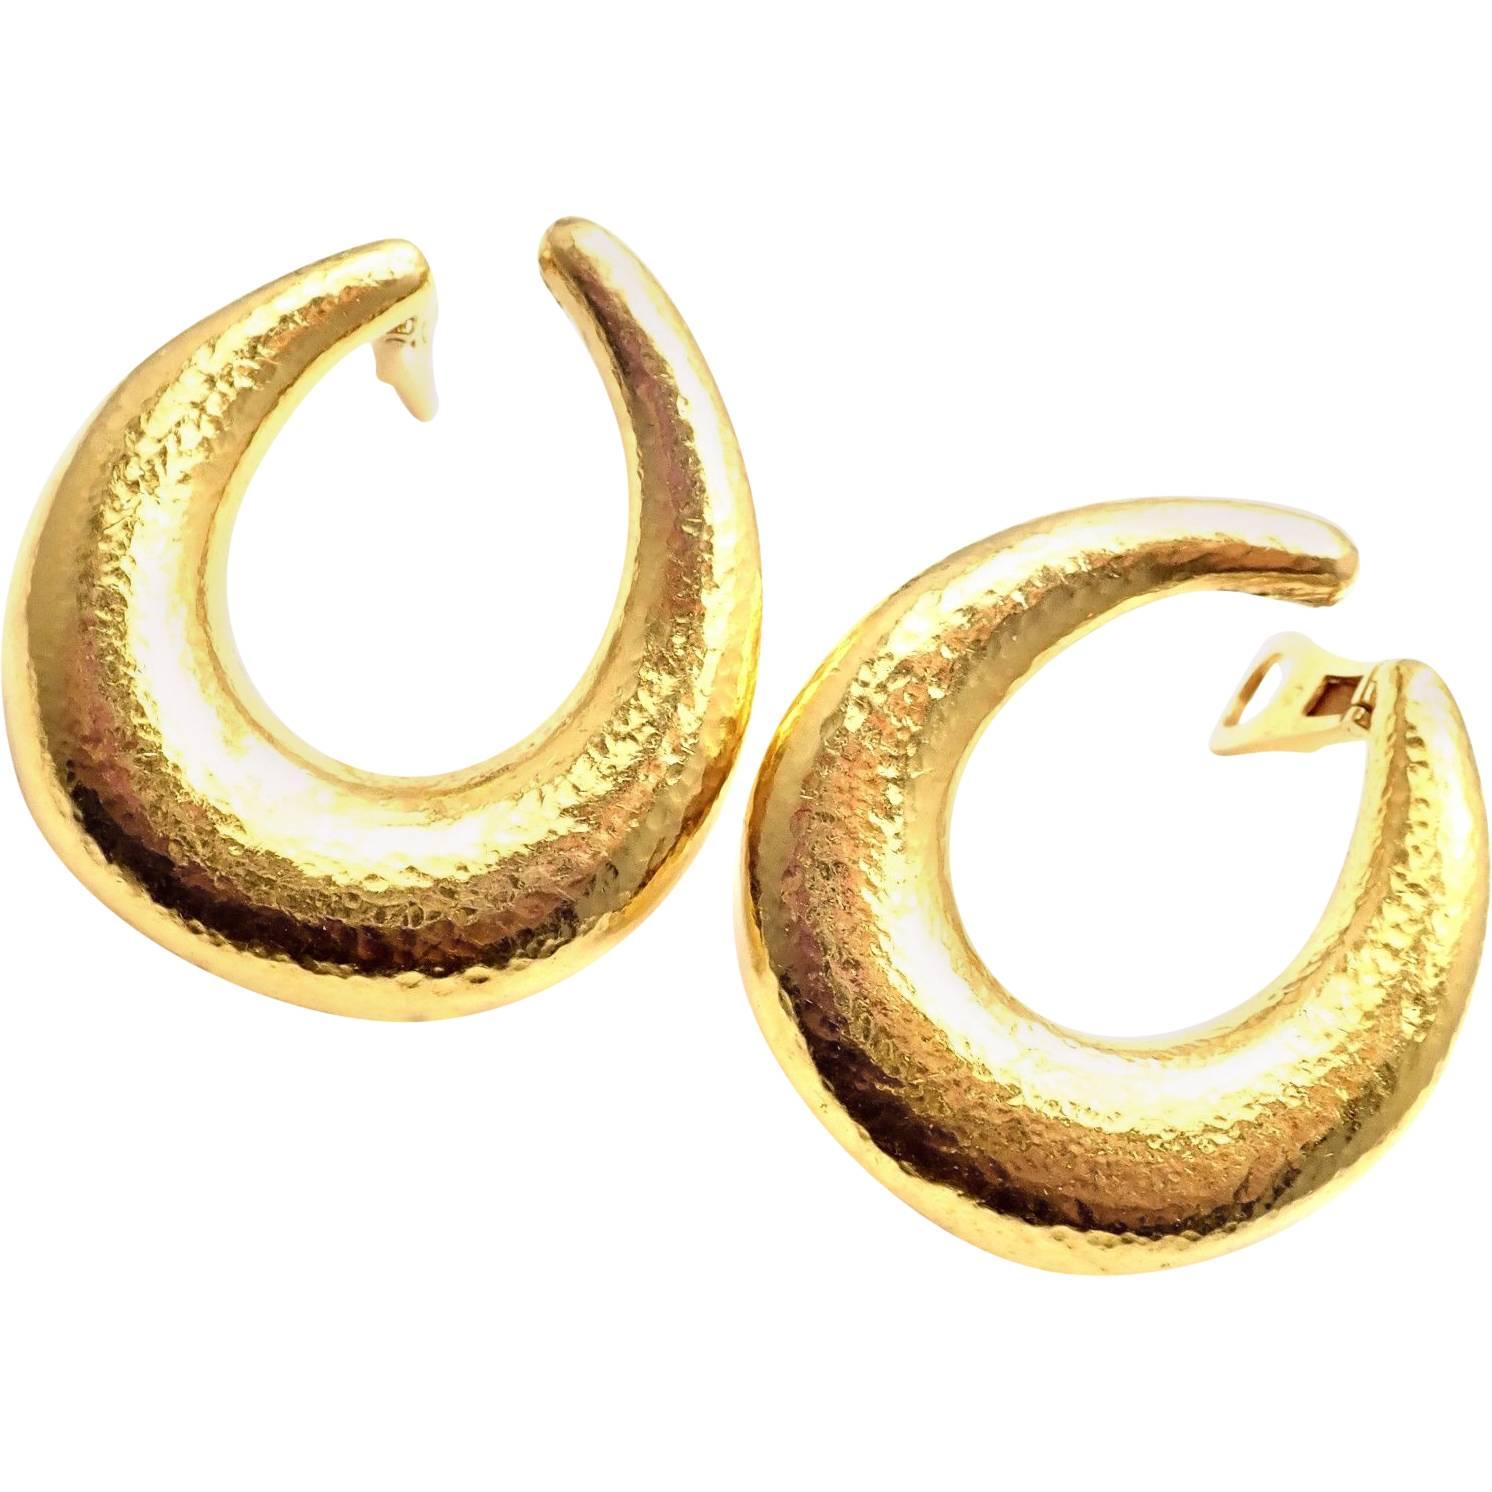 Zolotas Greece Large Yellow Gold Hoop Earrings